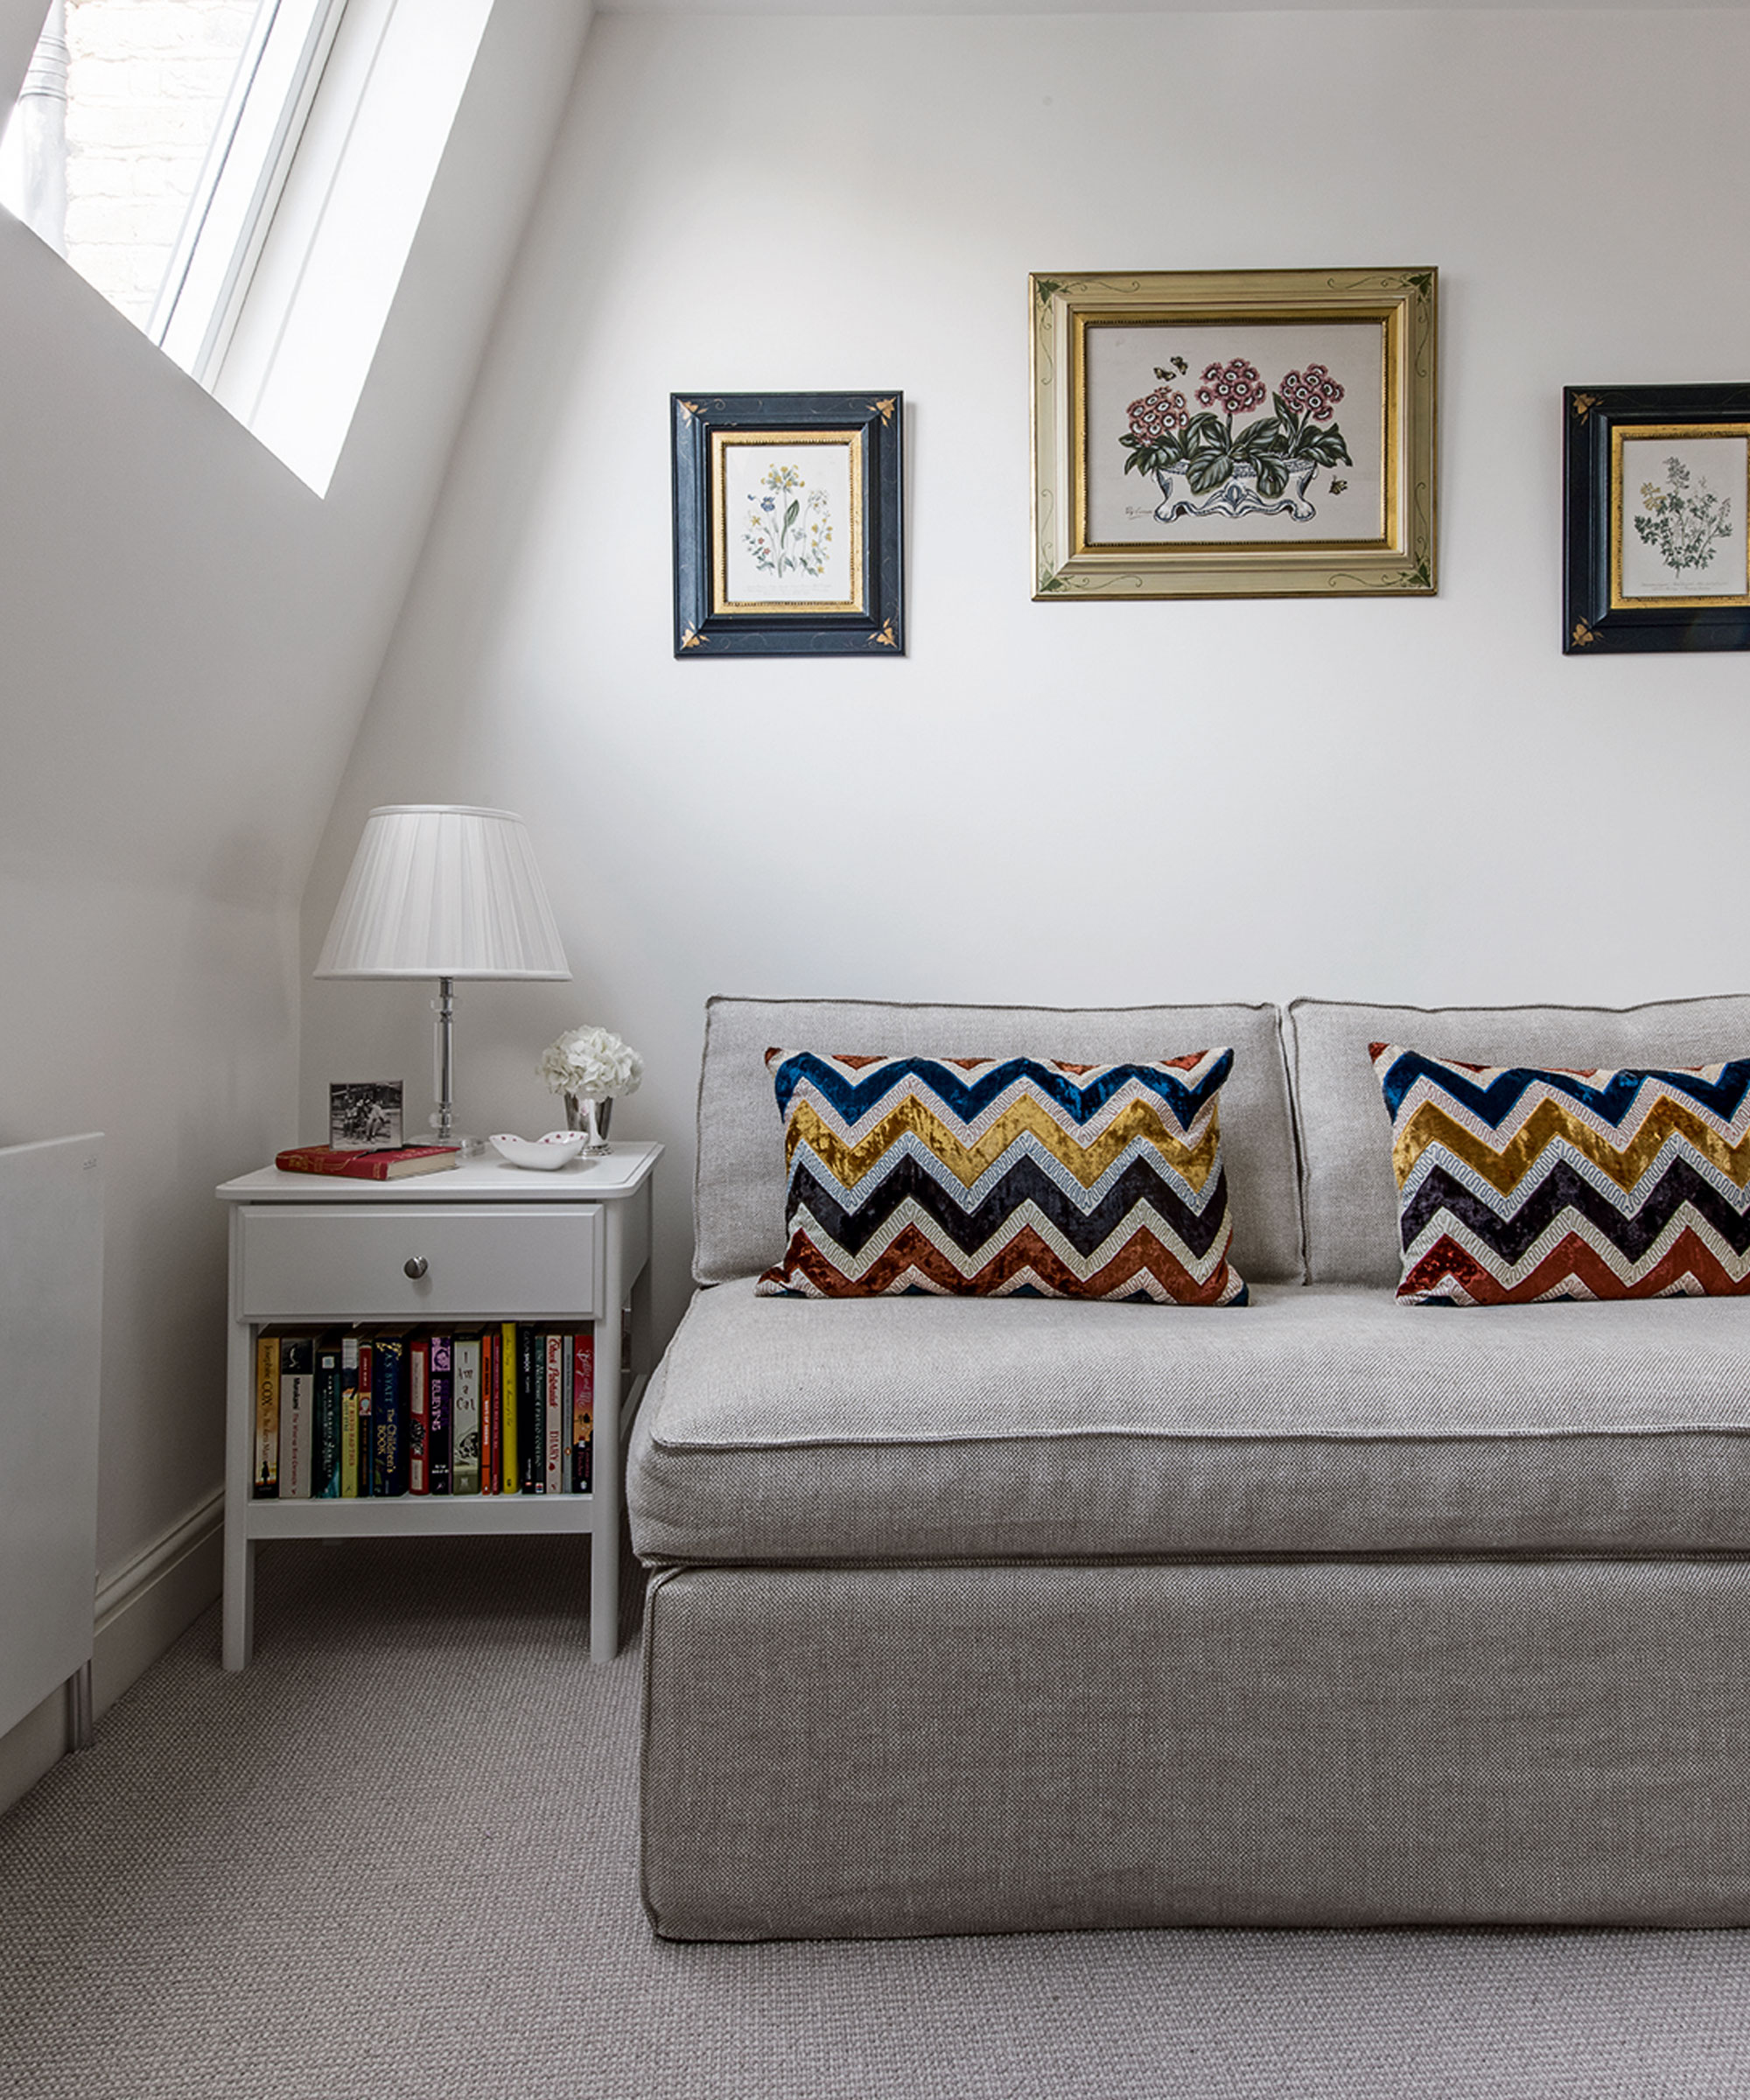 Un dormitorio con un sofá cama gris y cojines estampados en zigzag, aleros inclinados y ventana abuhardillada.